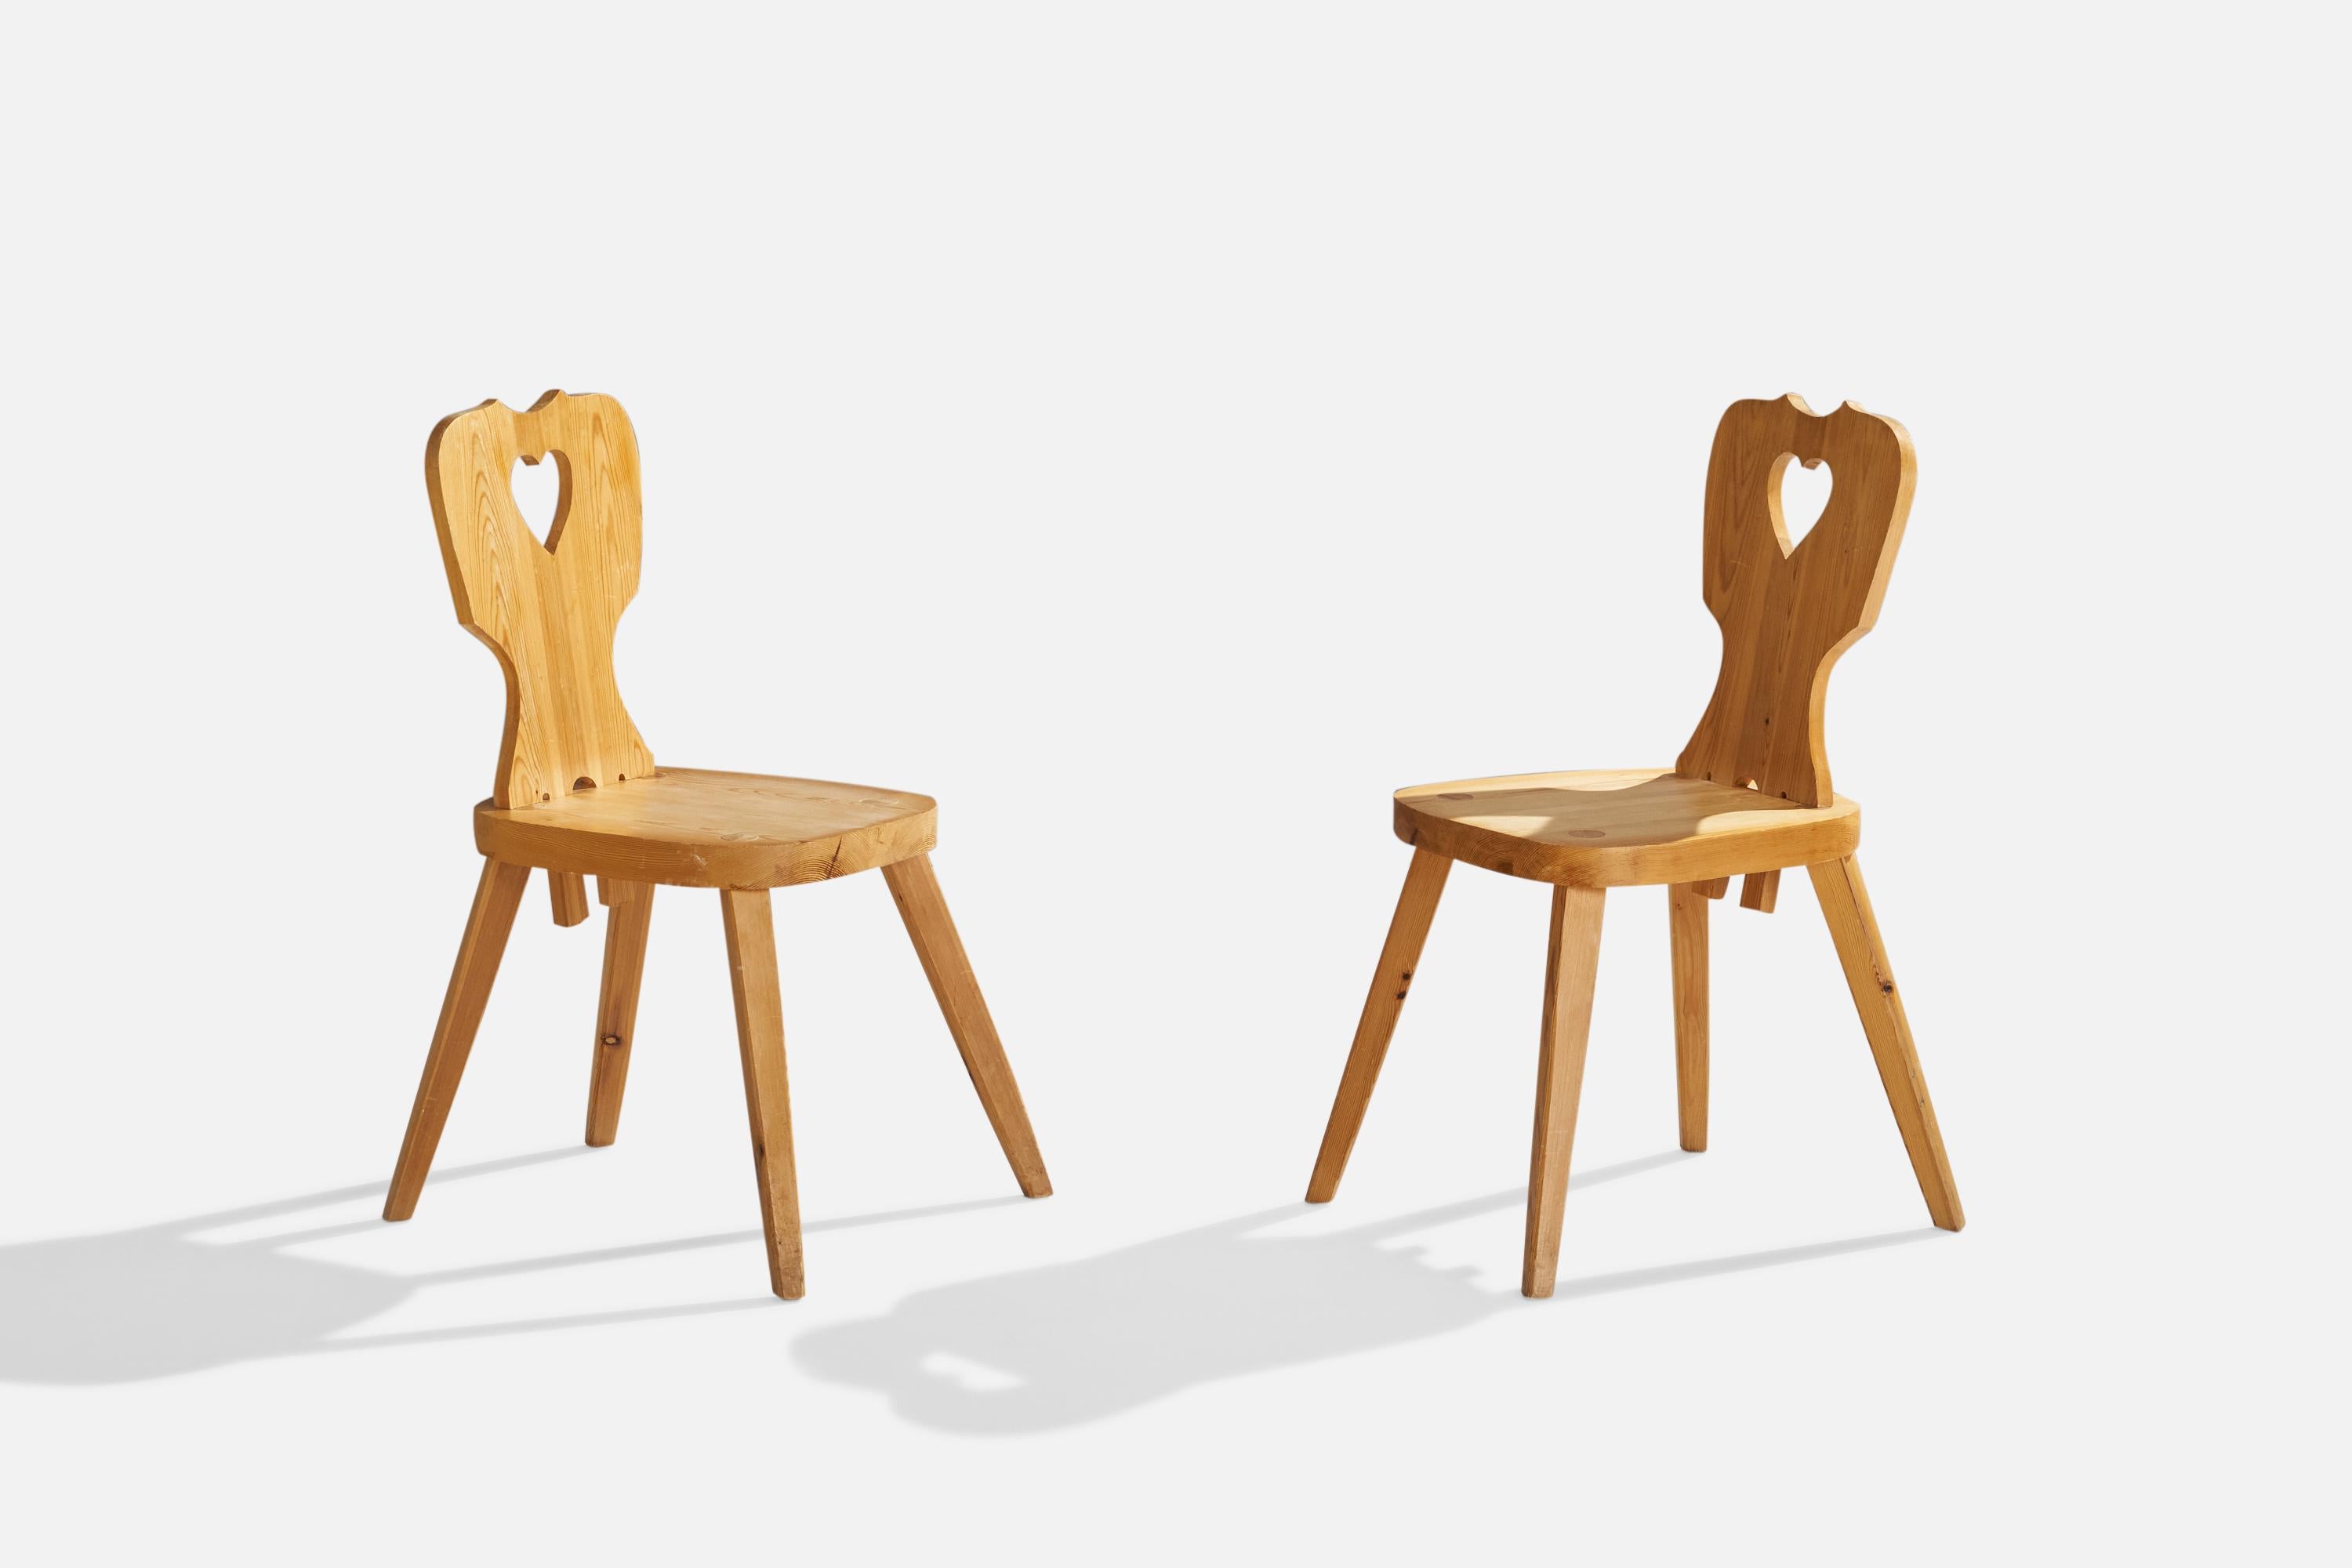 Ein Paar Beistellstühle aus Kiefernholz, entworfen und hergestellt in Schweden im Jahr 1977.

Sitzhöhe 17,5